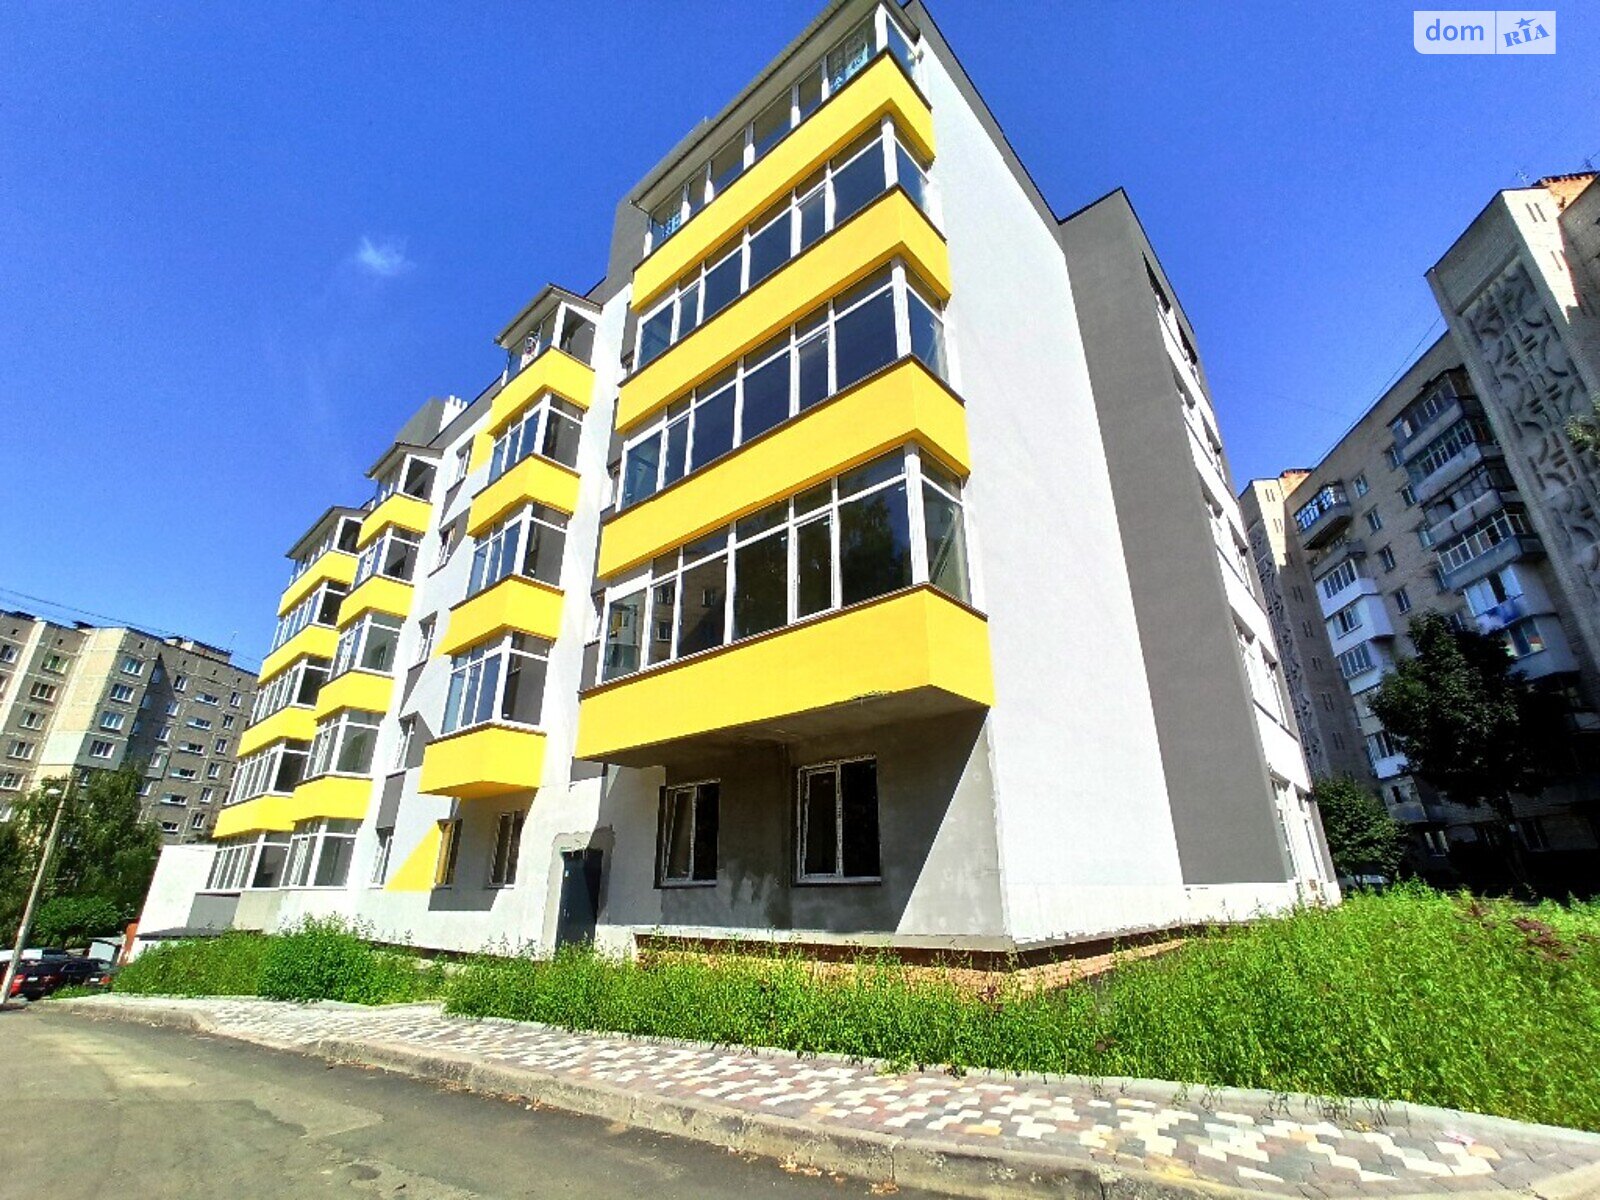 Продажа двухкомнатной квартиры в Виннице, на ул. Полевая 8, район Электросеть фото 1